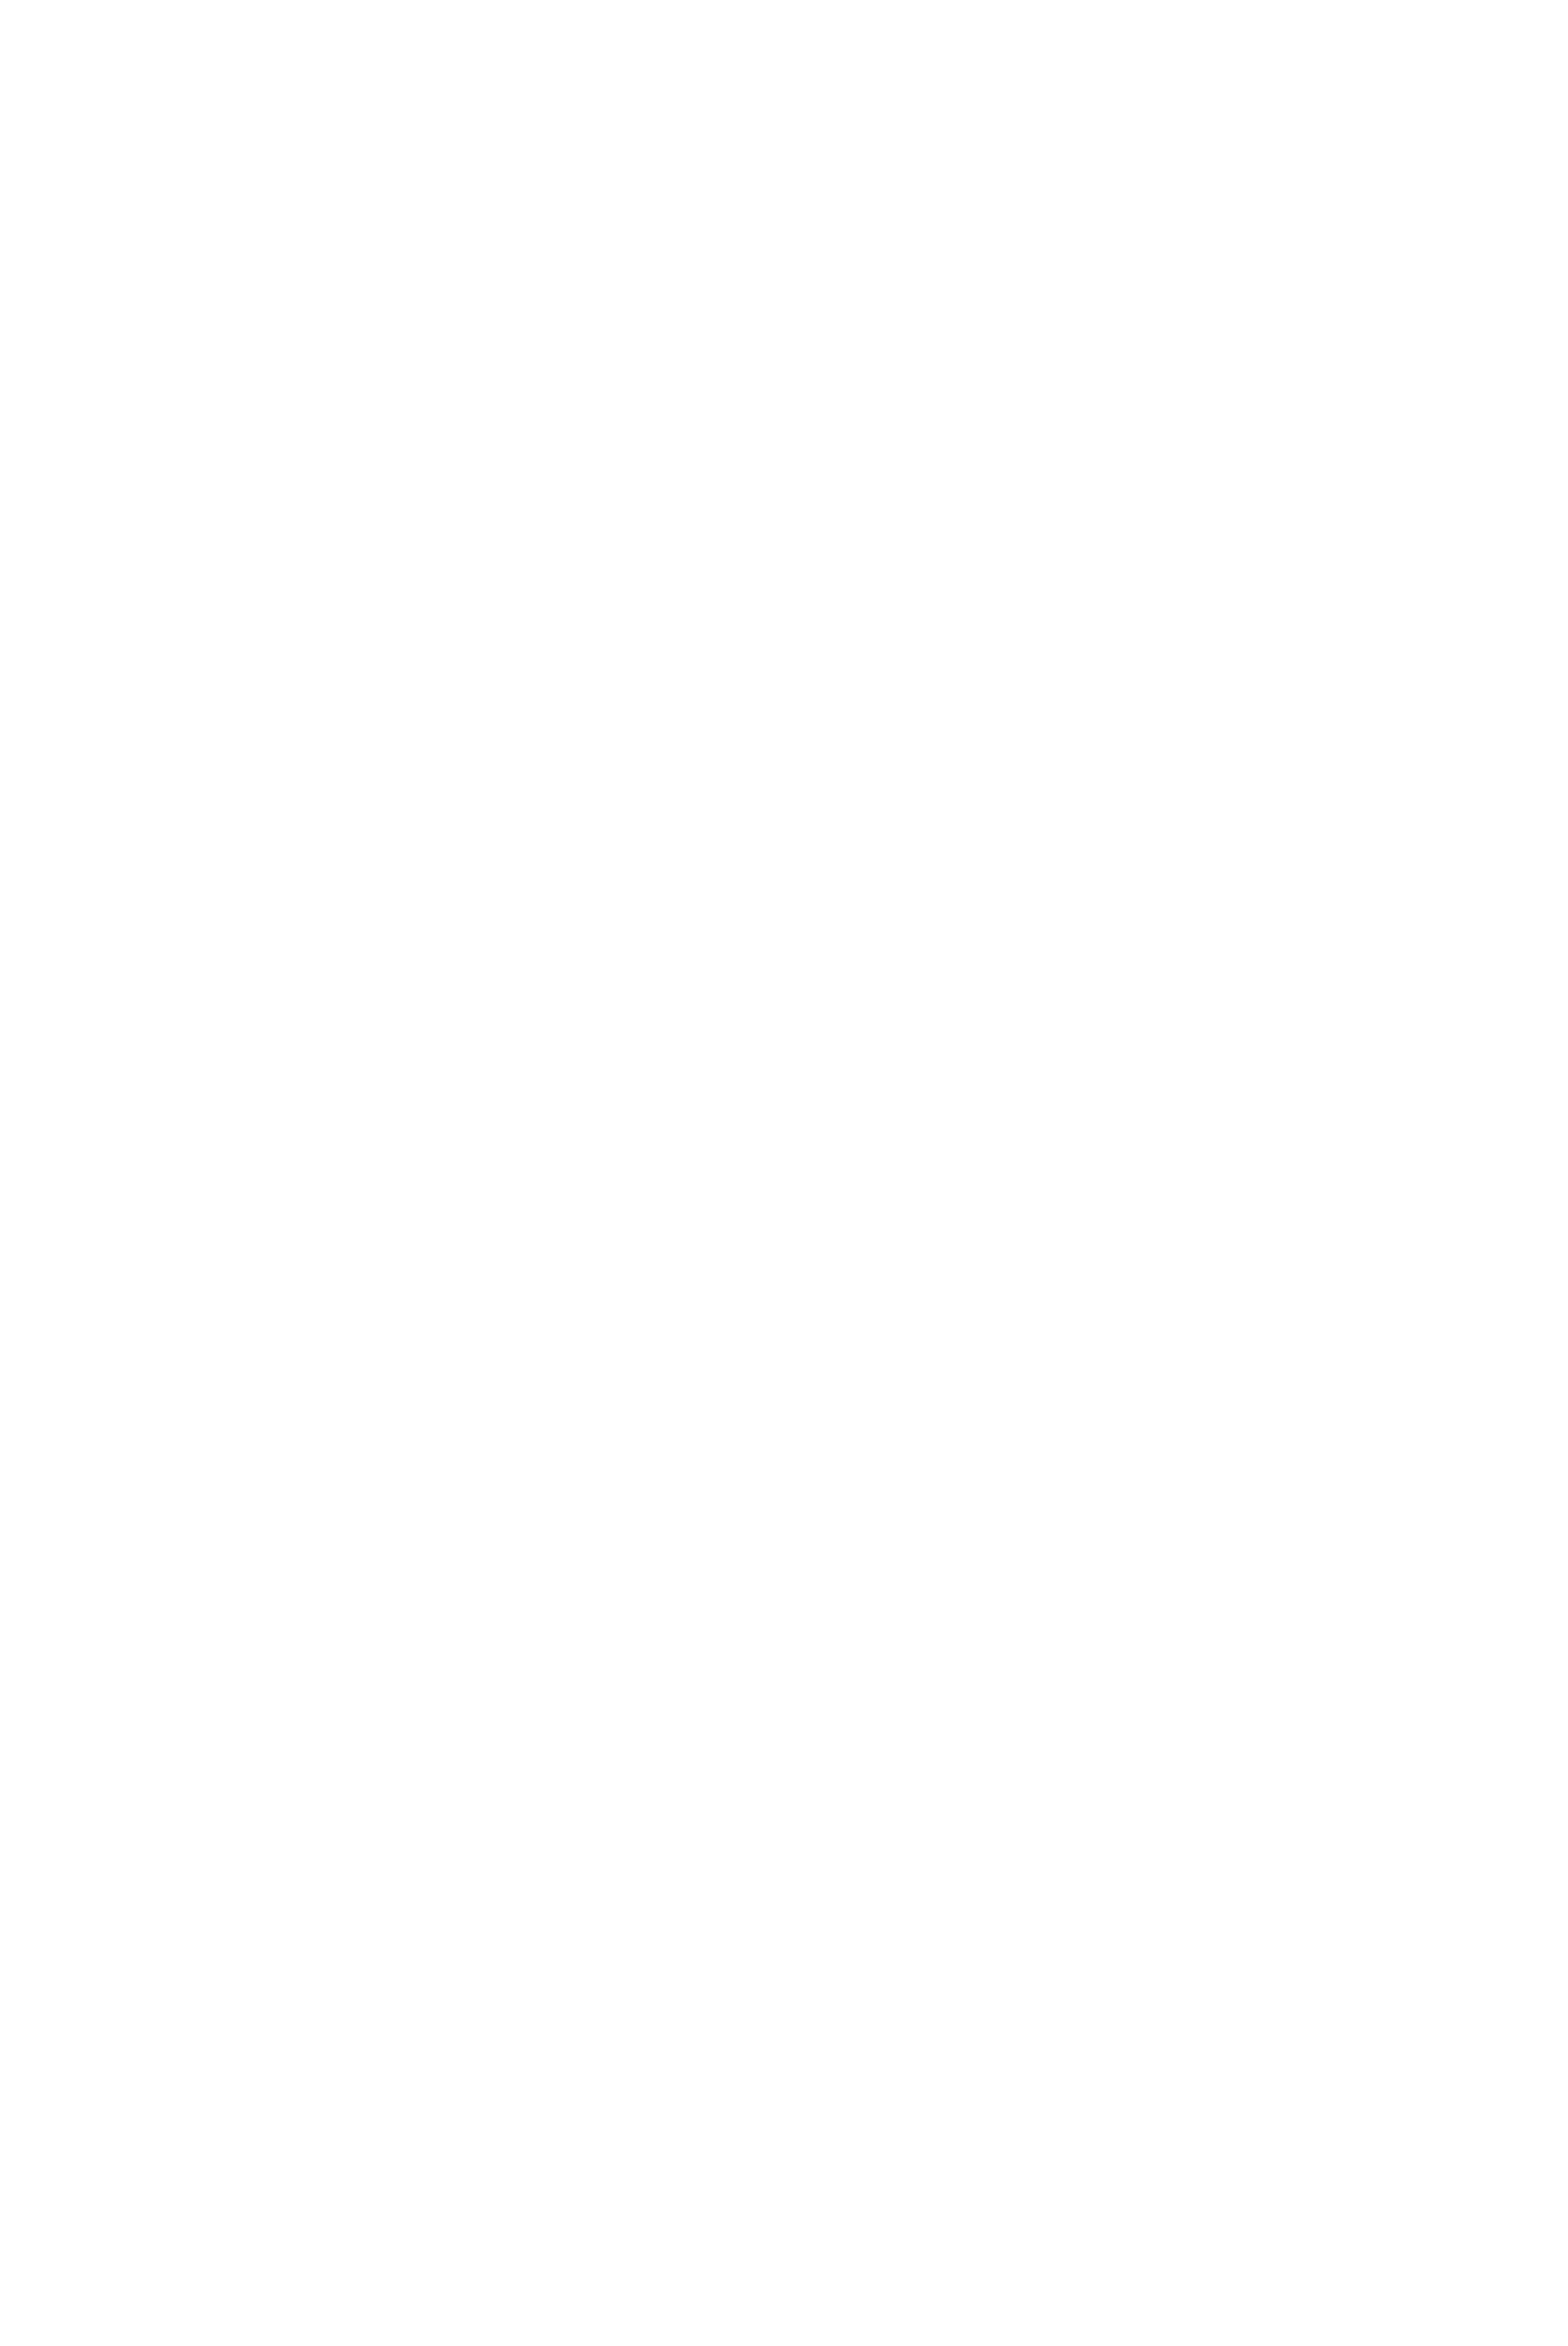 JANE'S SEAMOSS CREATIONS Home